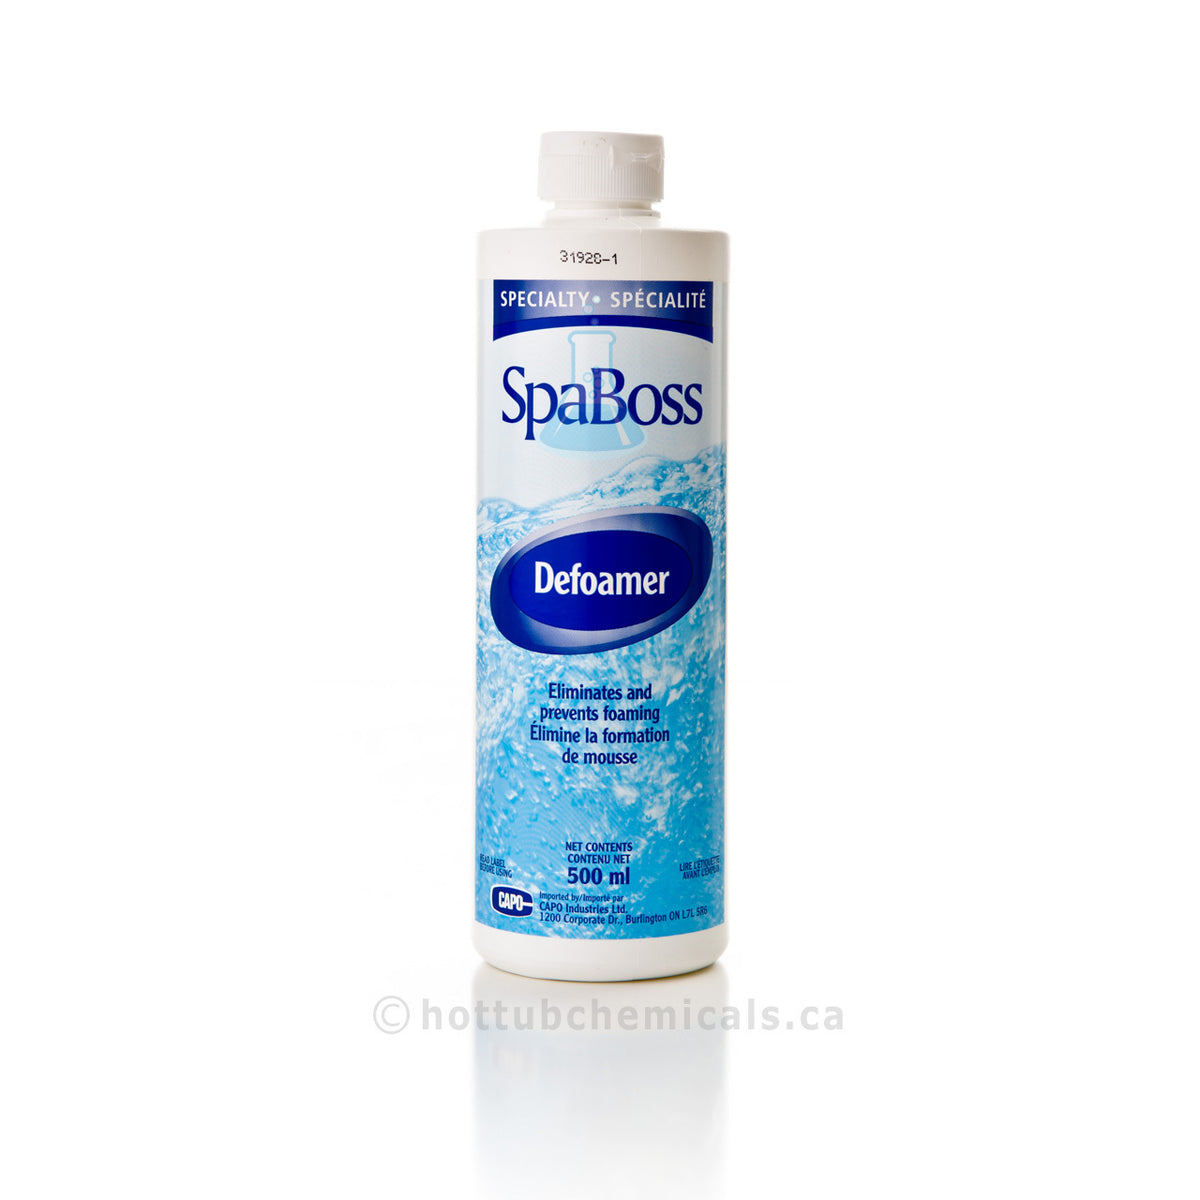 SpaBoss Defoamer - hottubchemicals